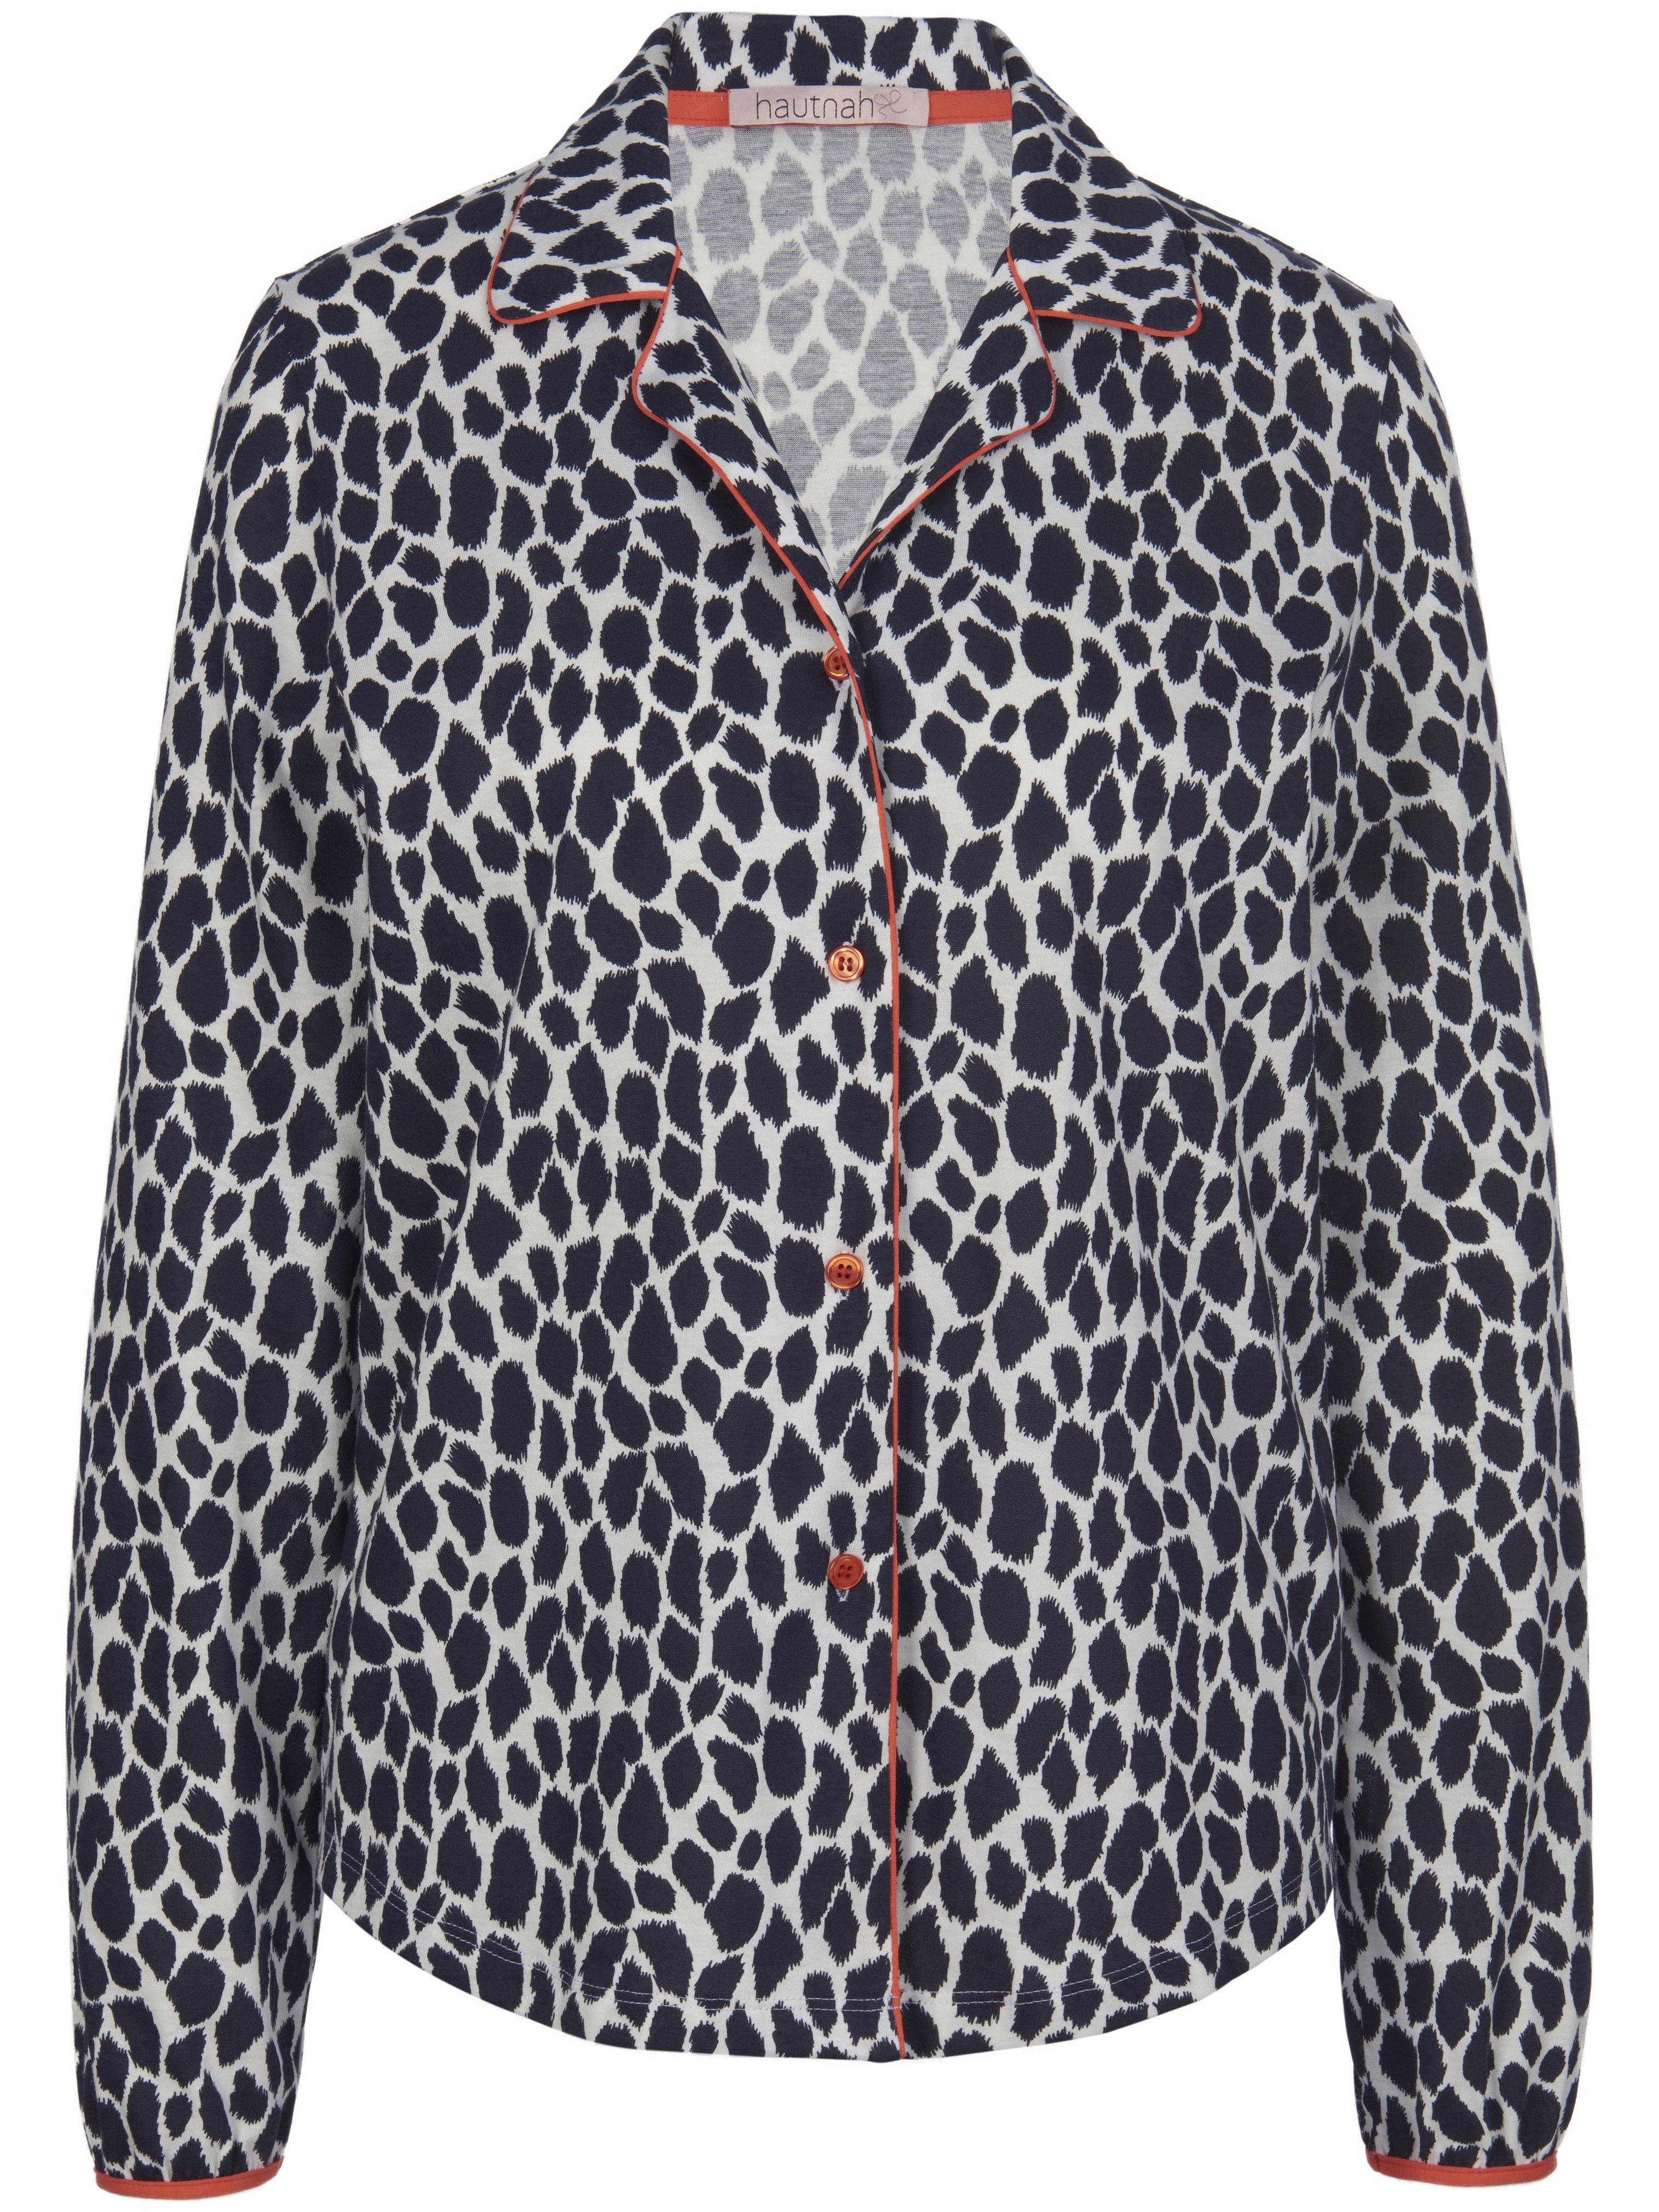 Le pyjama 100% coton à imprimé léopard  Hautnah bleu